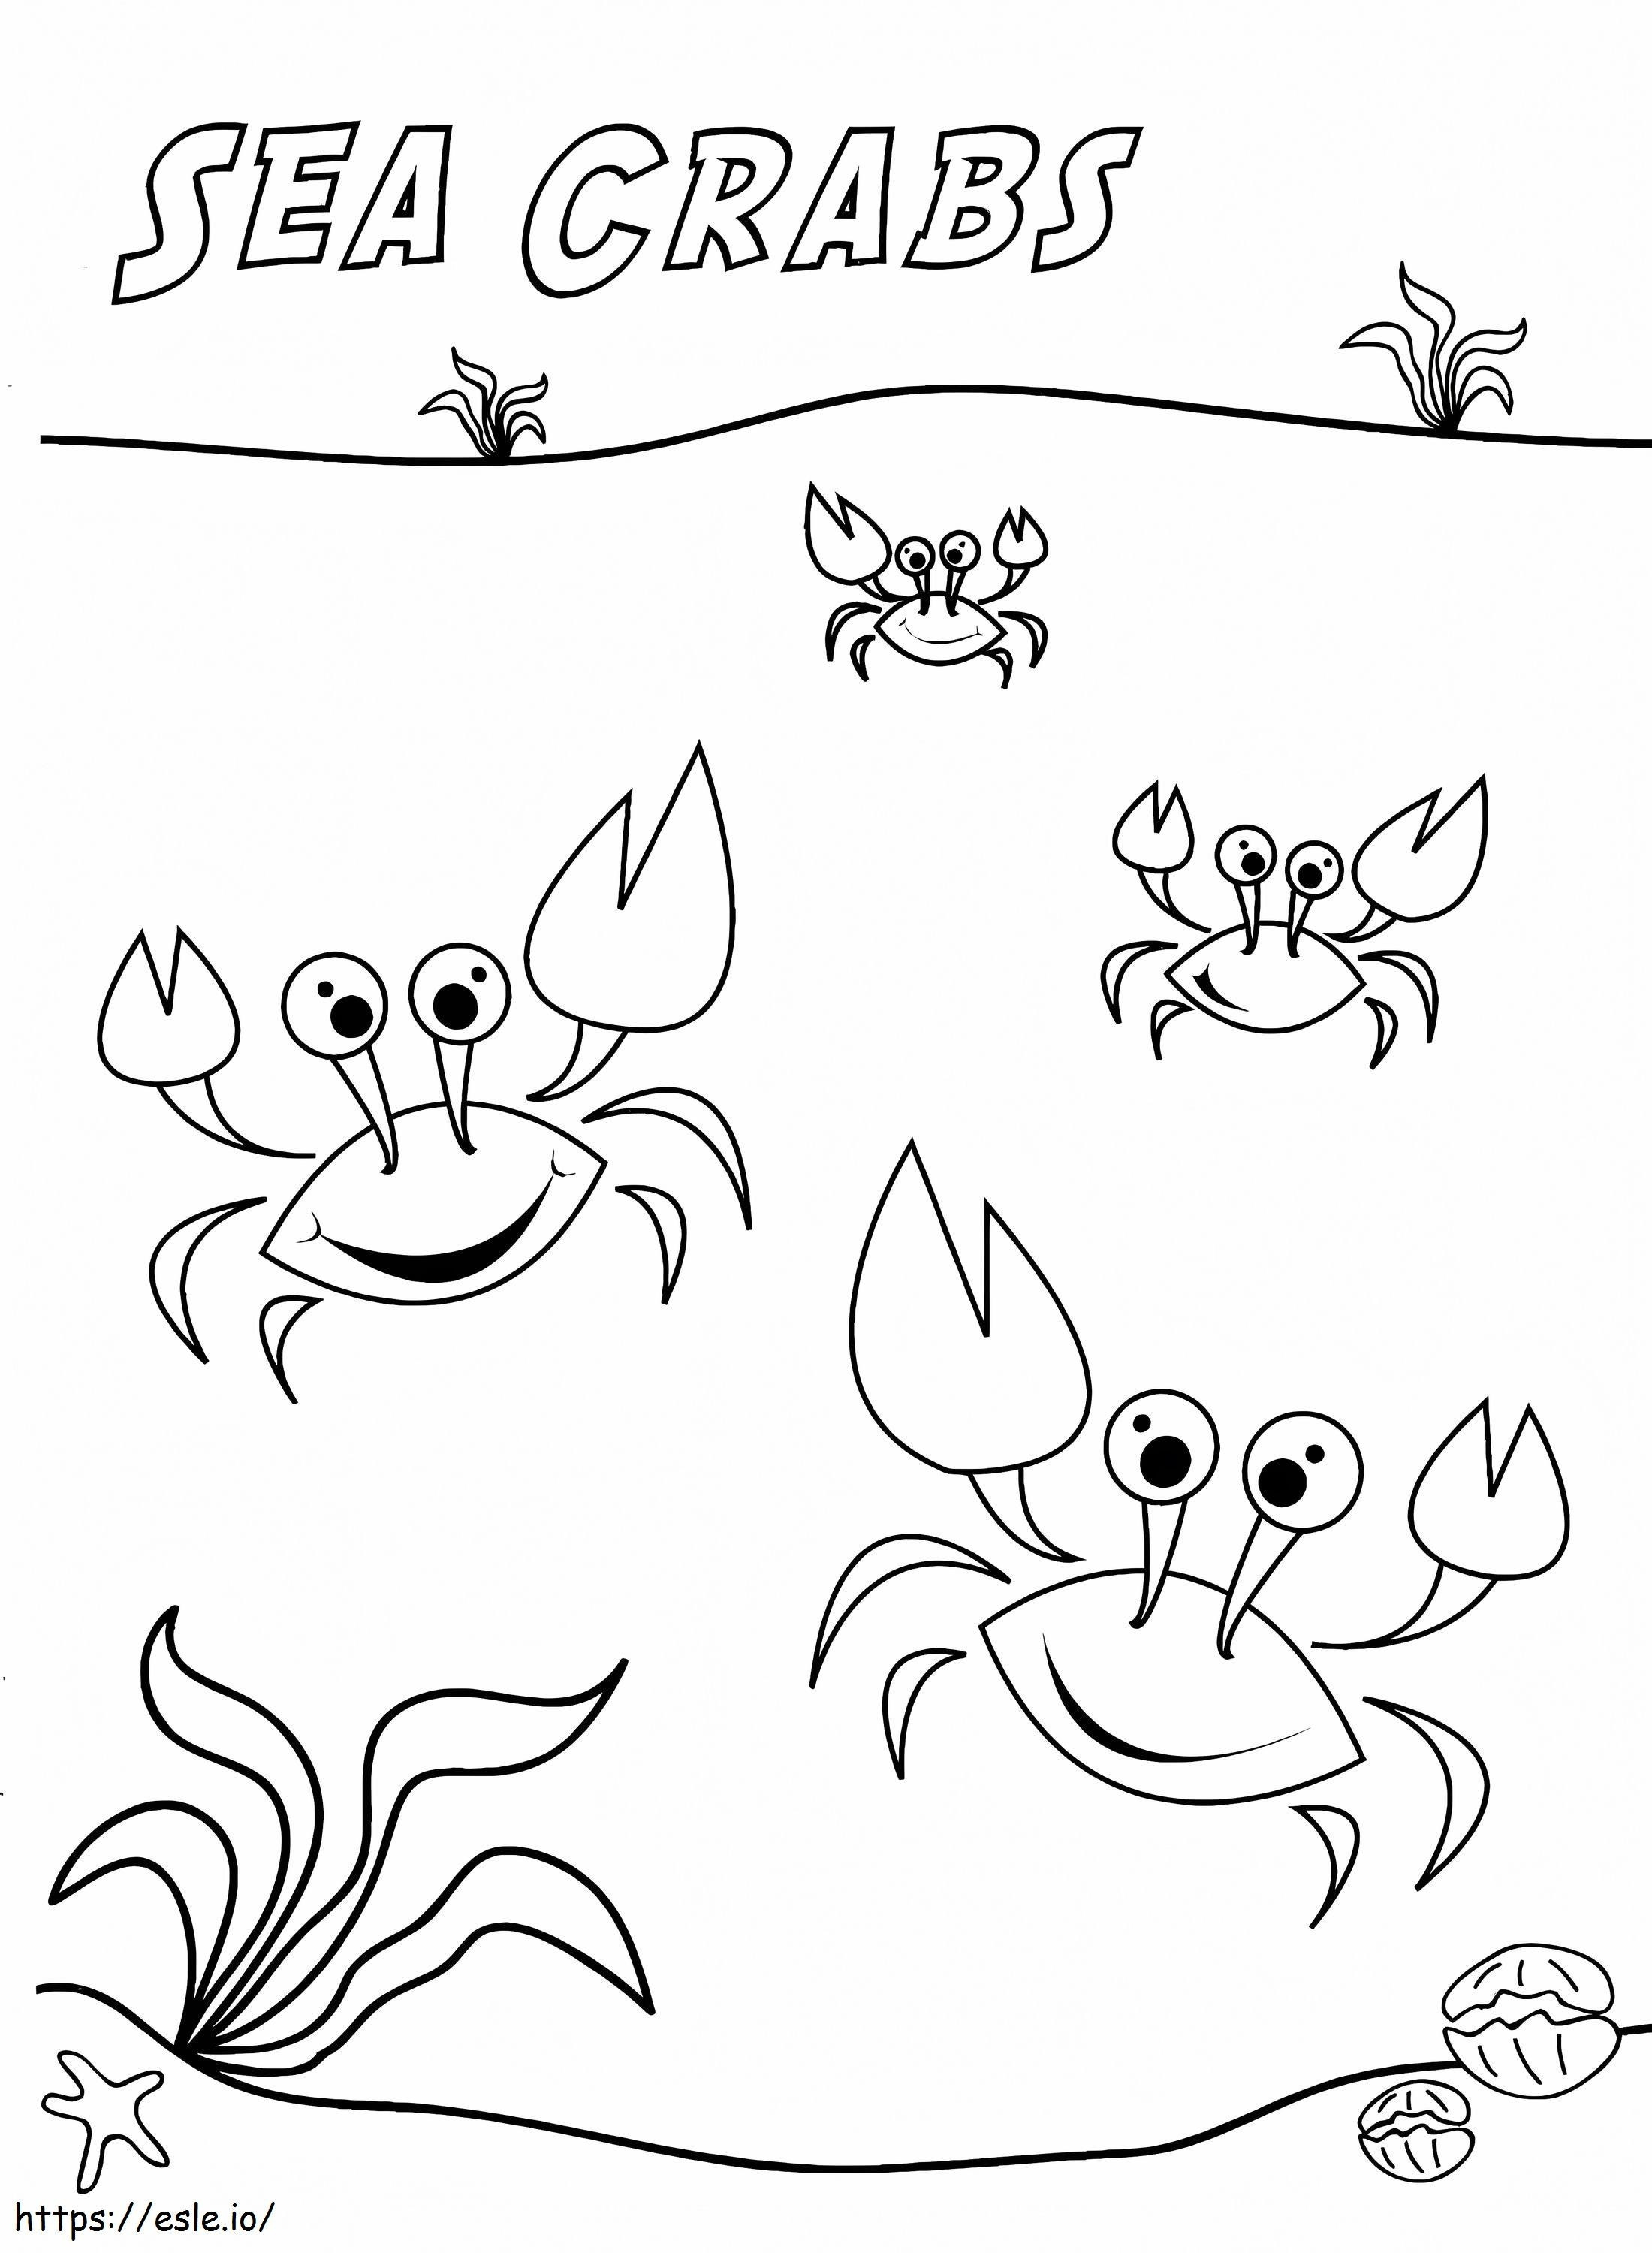 Sea Crabs coloring page